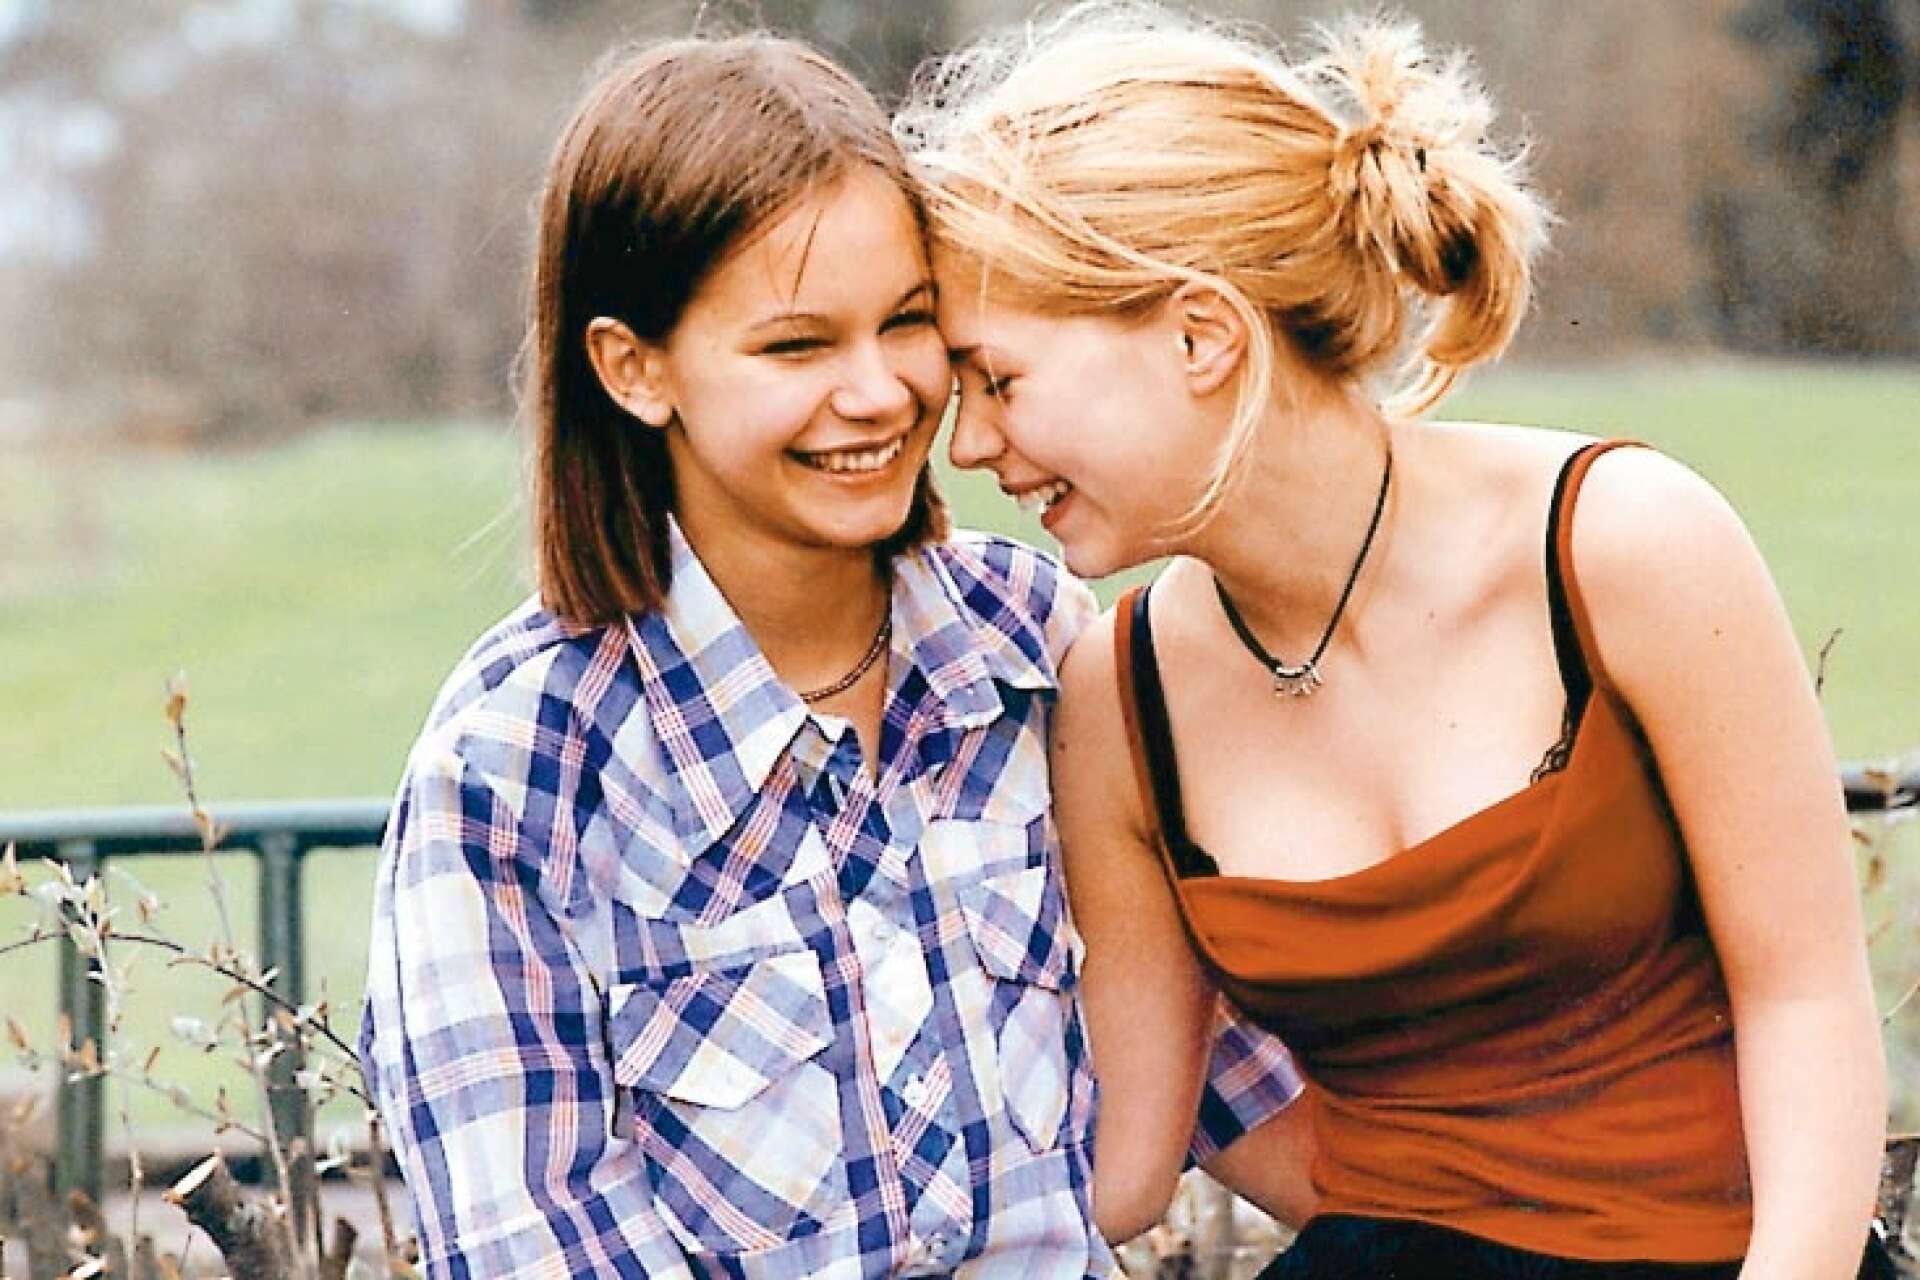 Huvudrollsinnehavarna Rebecka Liljeberg, som spelar Agnes, och Alexandra Dahlström, som spelar Elin, var bara 17 respektive 14 år när filmen spelades in.